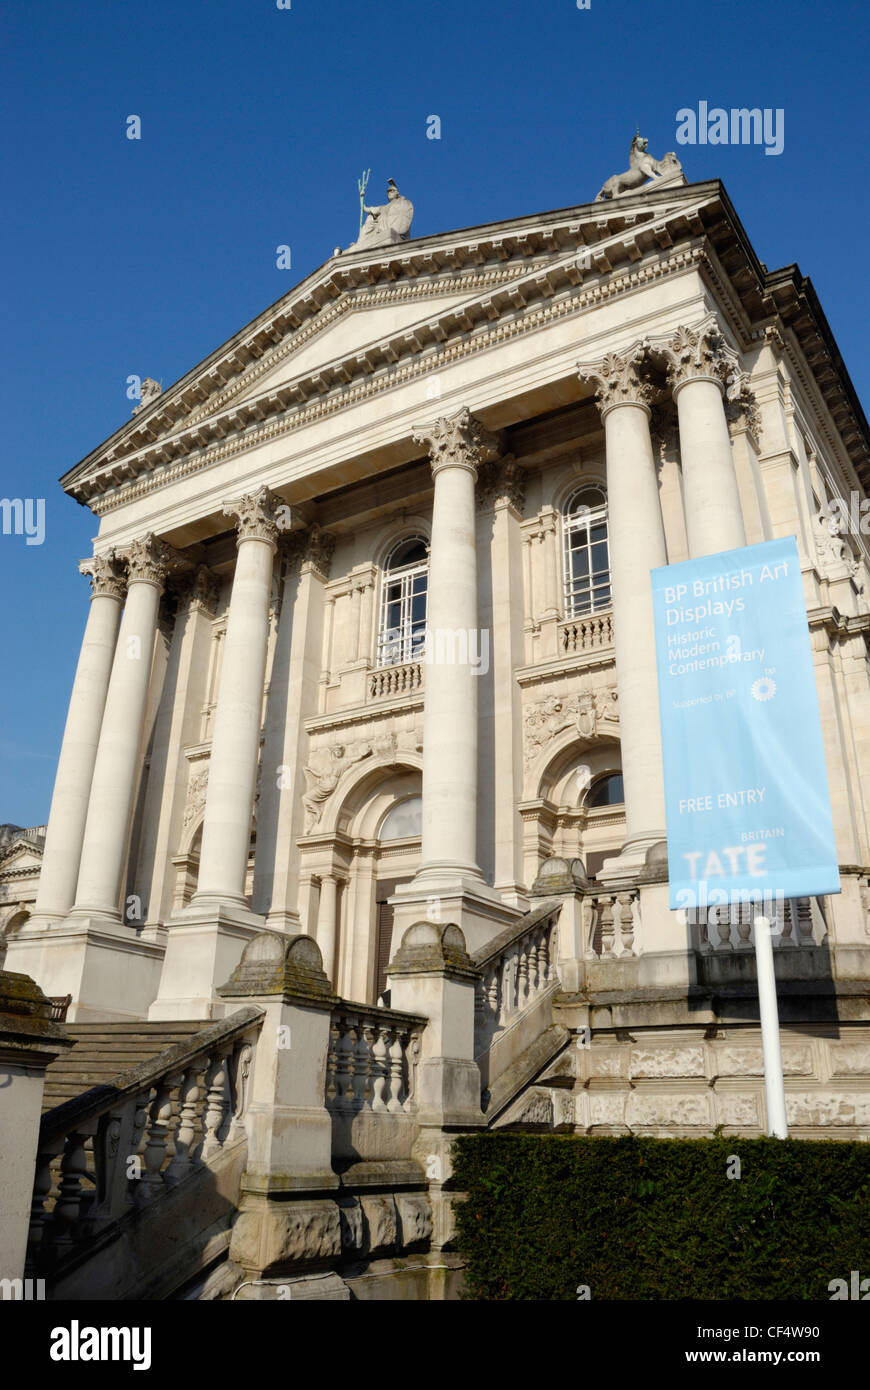 La galerie d'art Tate Britain, l'accueil de l'art britannique de 1500 à nos jours. Banque D'Images